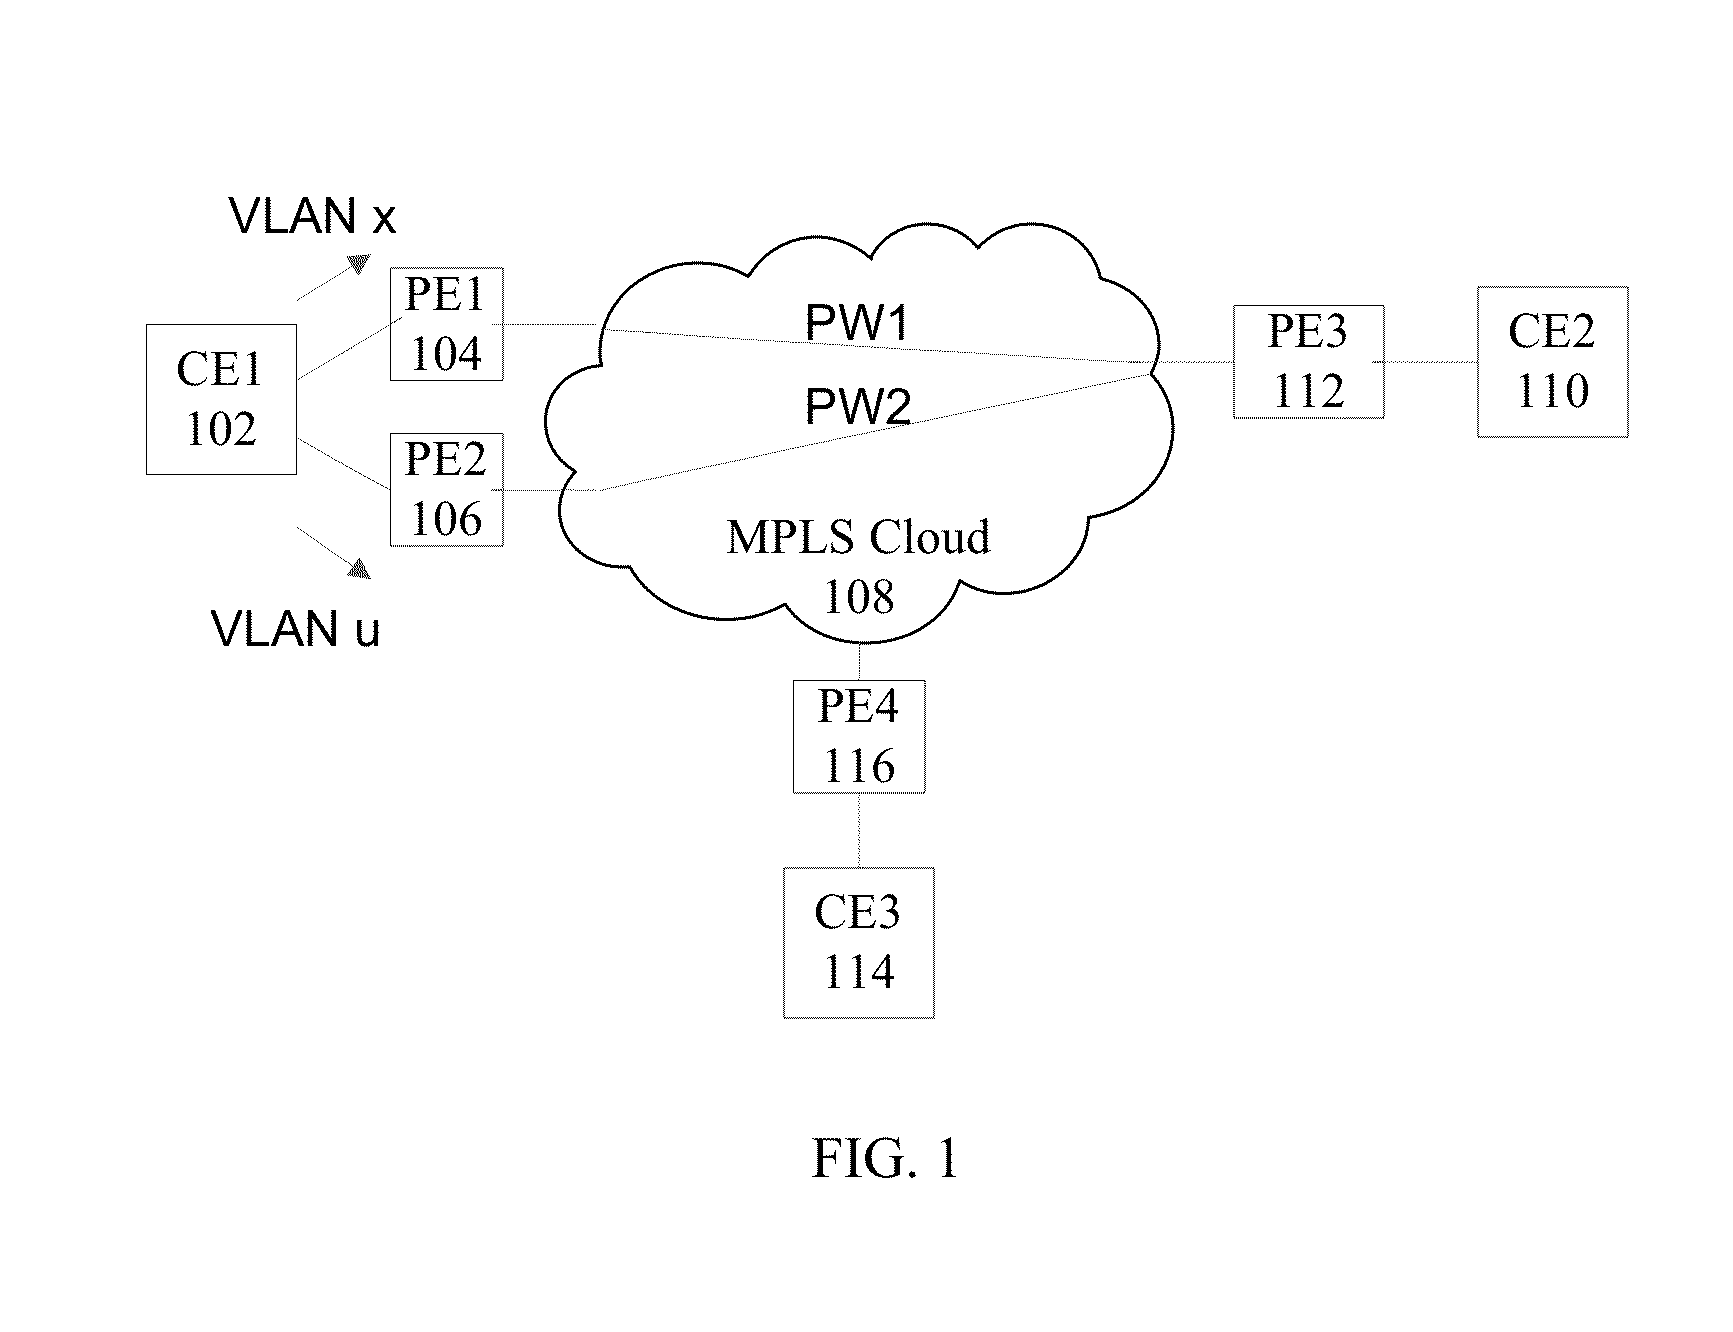 Mechanism for e-vpn interoperability with vpls